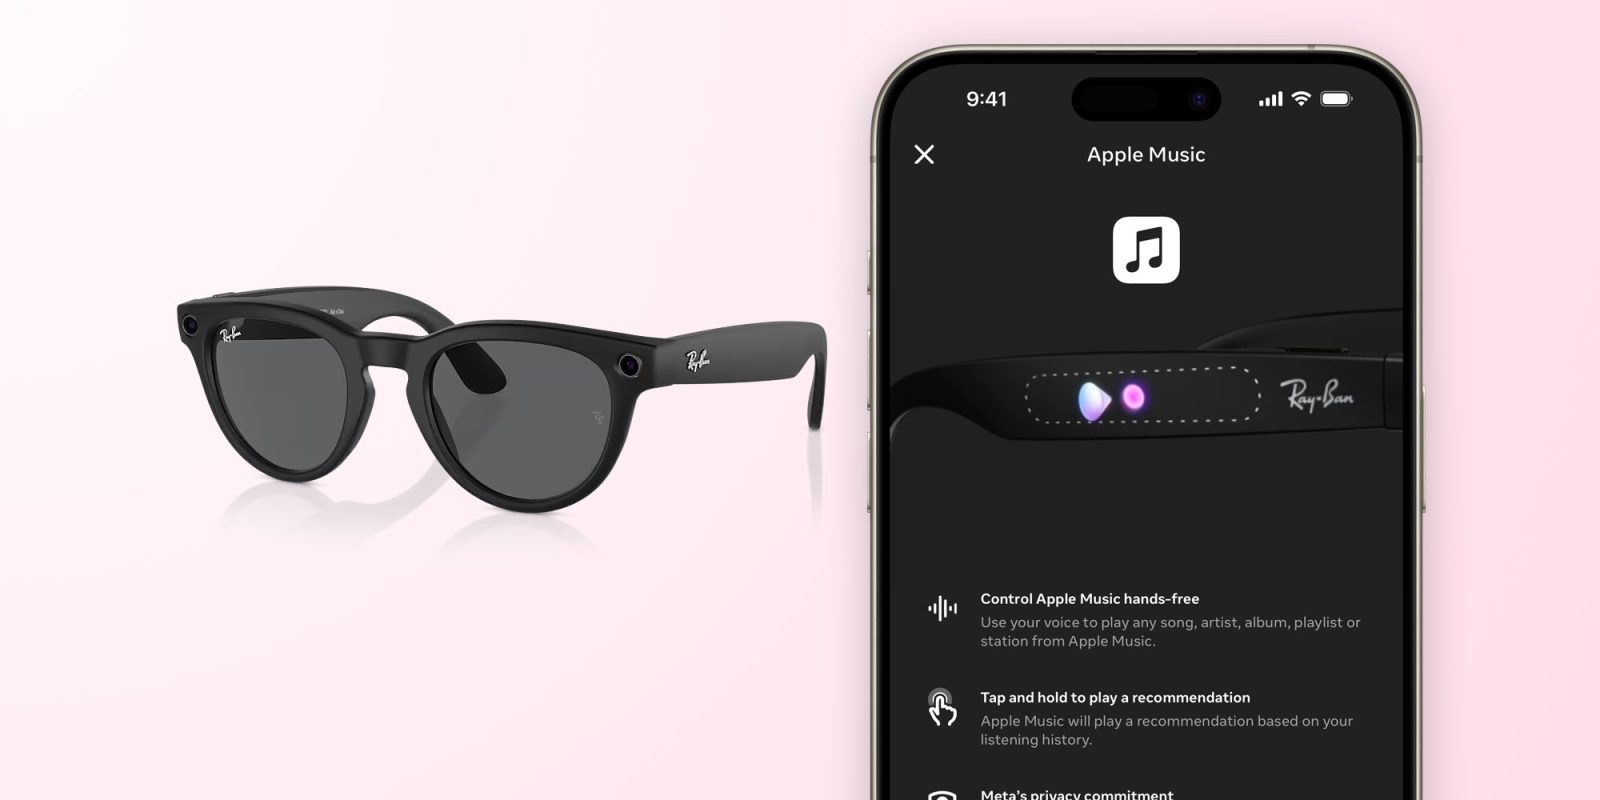 Les lunettes Ray-Ban Meta intègrent désormais Apple Music avec les commandes vocales